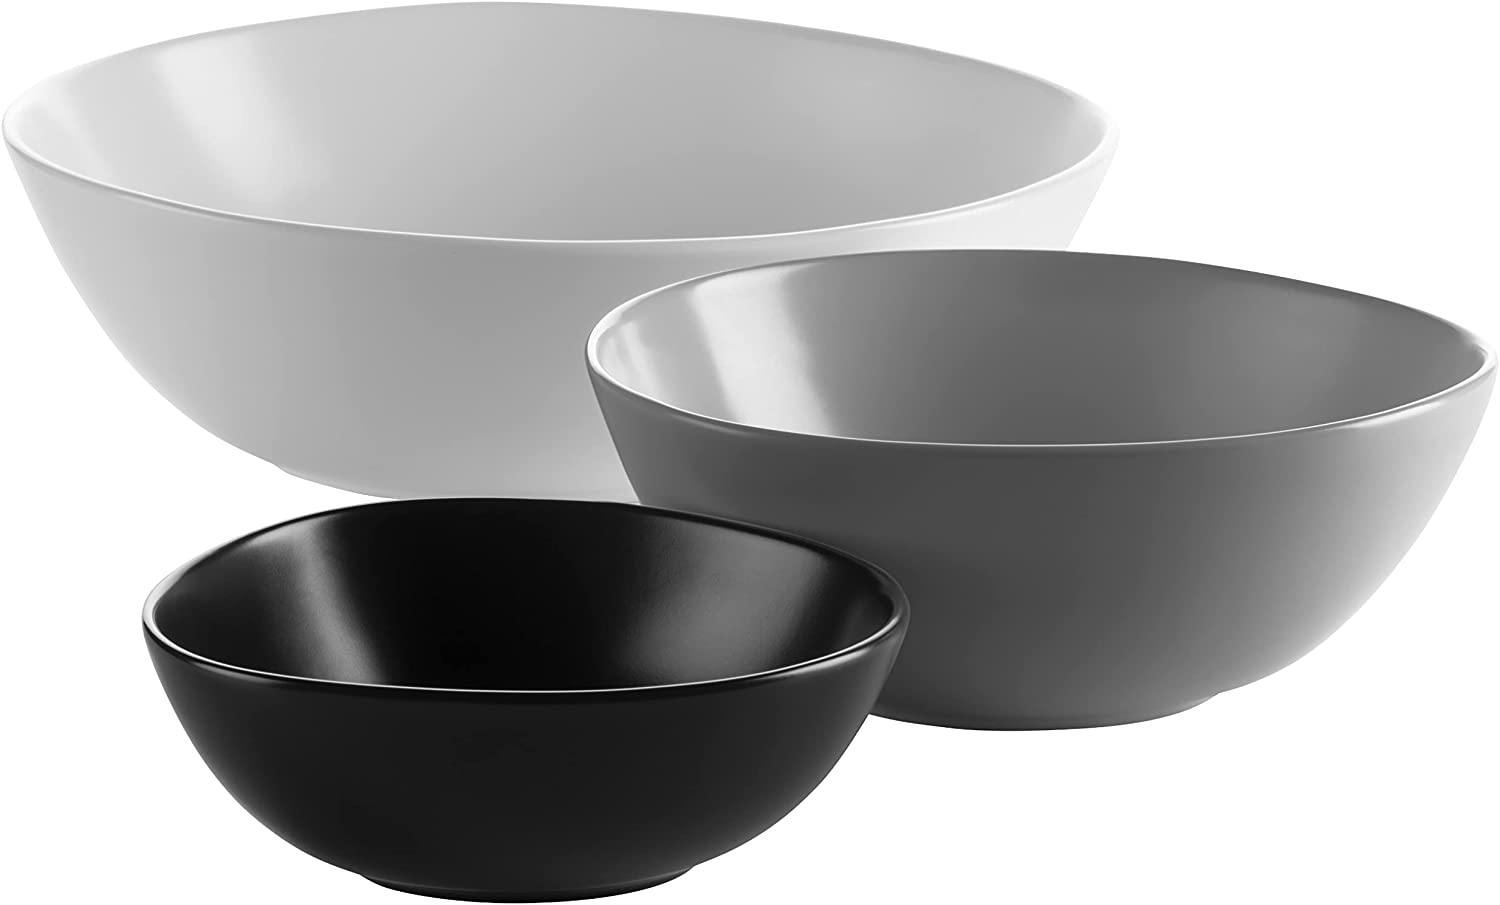 Maser Mäser Glendale 931241 Series 4-Piece Side Dish Set Large Flat Serving Bowls in Two Sizes Matt Varnished Ceramic Black and White